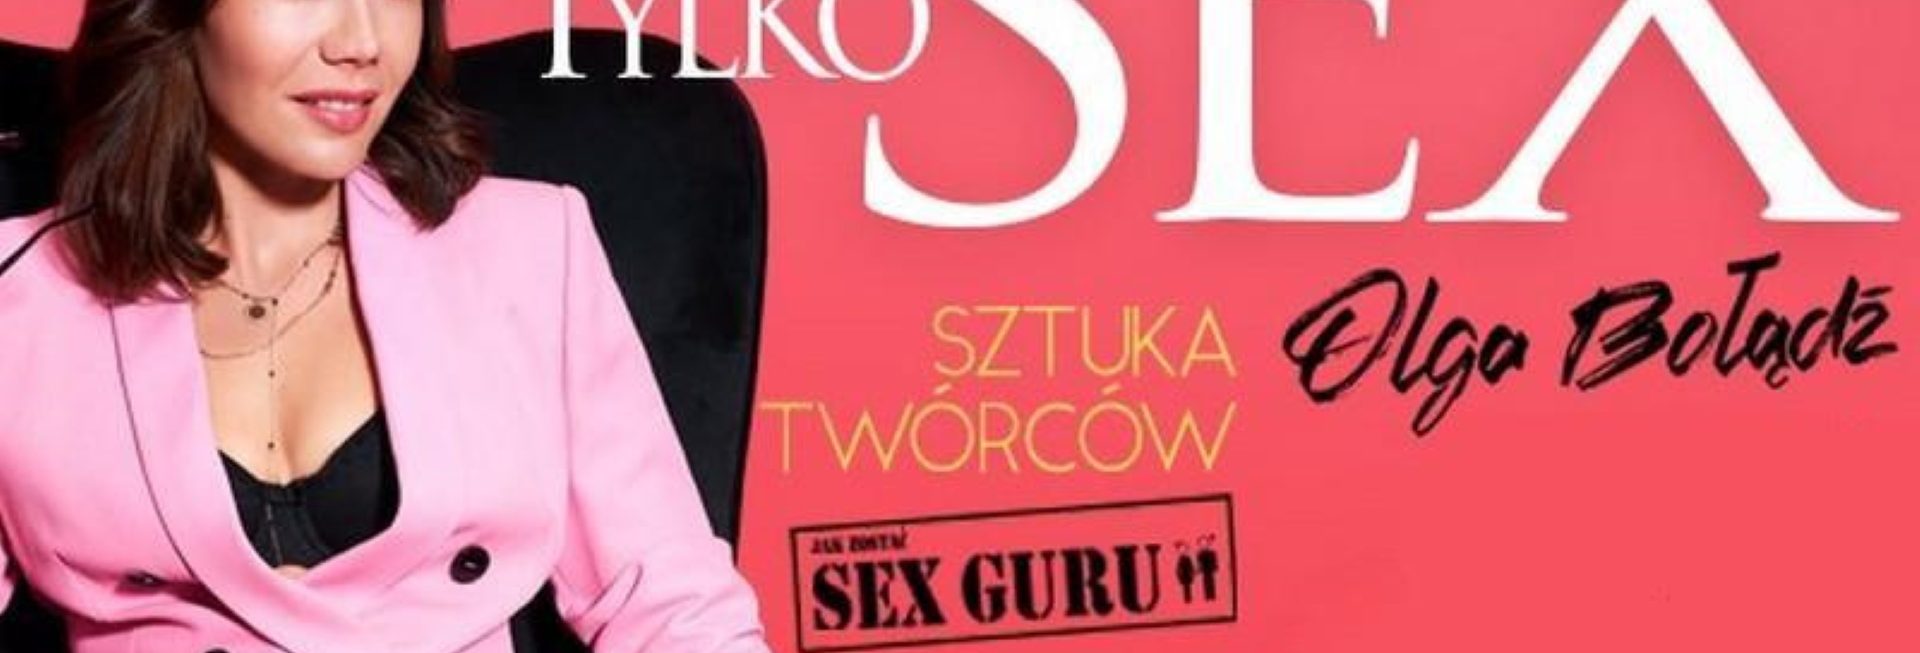 Plakat graficzny zapraszający do Olsztyna na spektakl teatralny "To Tylko Sex" - Olsztyn 2021. Na plakacie zdjęcie aktorki oraz napisy.